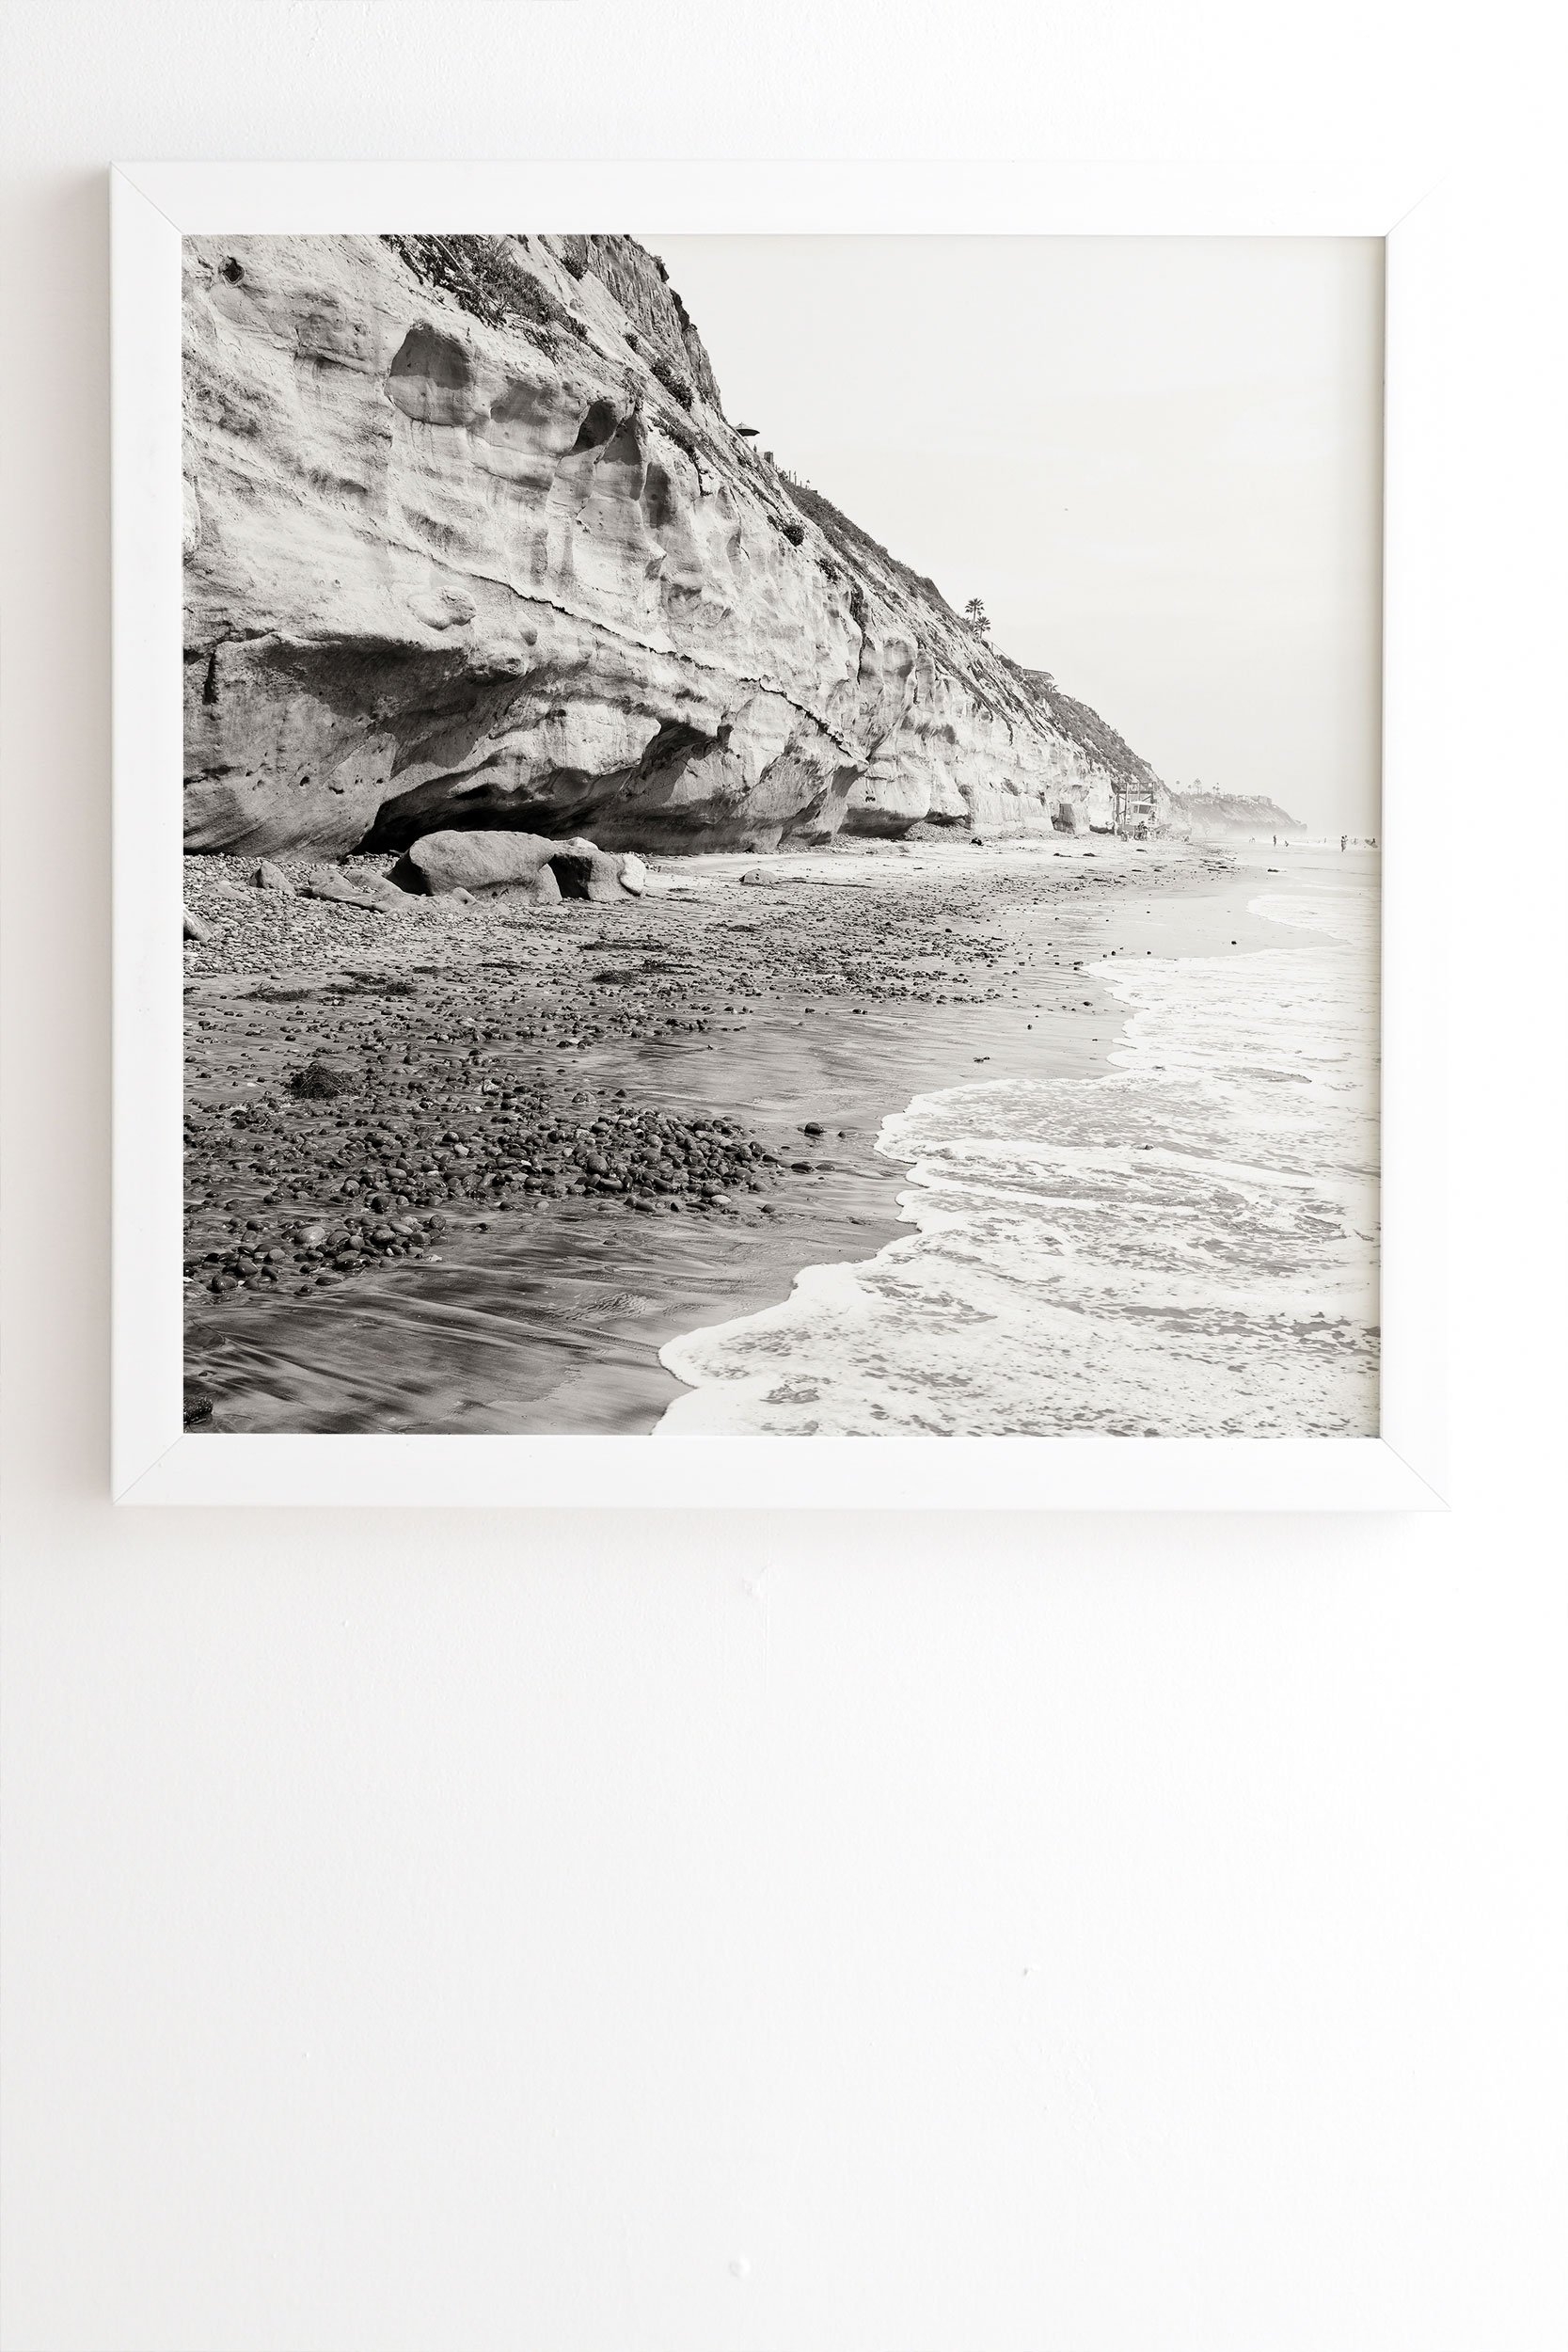 Bree Madden Stonesteps White Framed Wall Art - 20" x 20" - Image 1